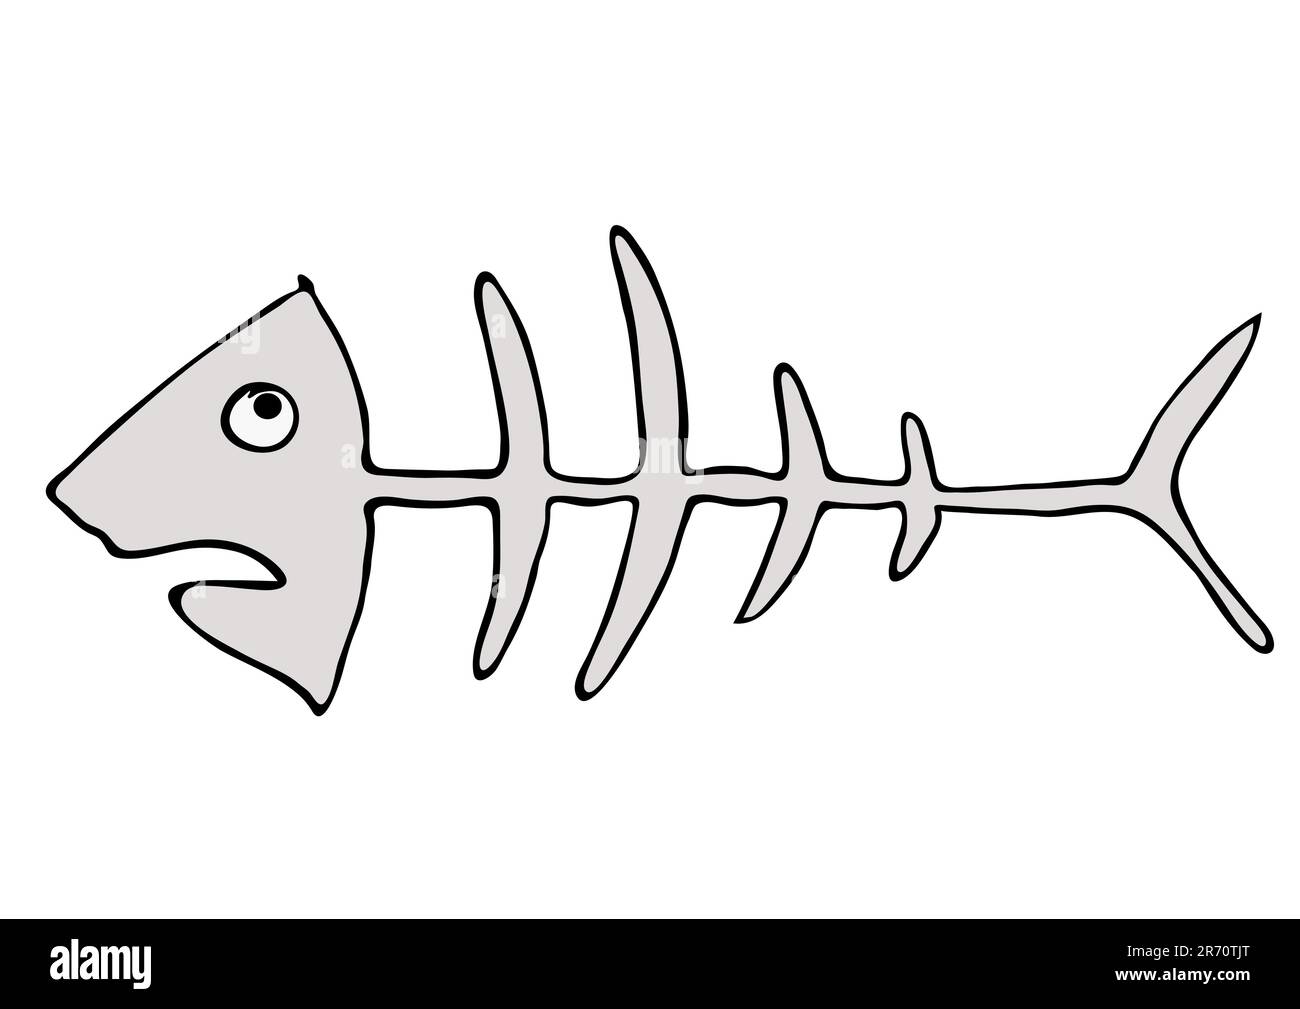 Illustrazione a cartoni animati dello scheletro dei pesci. Questo file è vettoriale - può essere rasato a qualsiasi dimensione senza perdita di qualità. Illustrazione Vettoriale